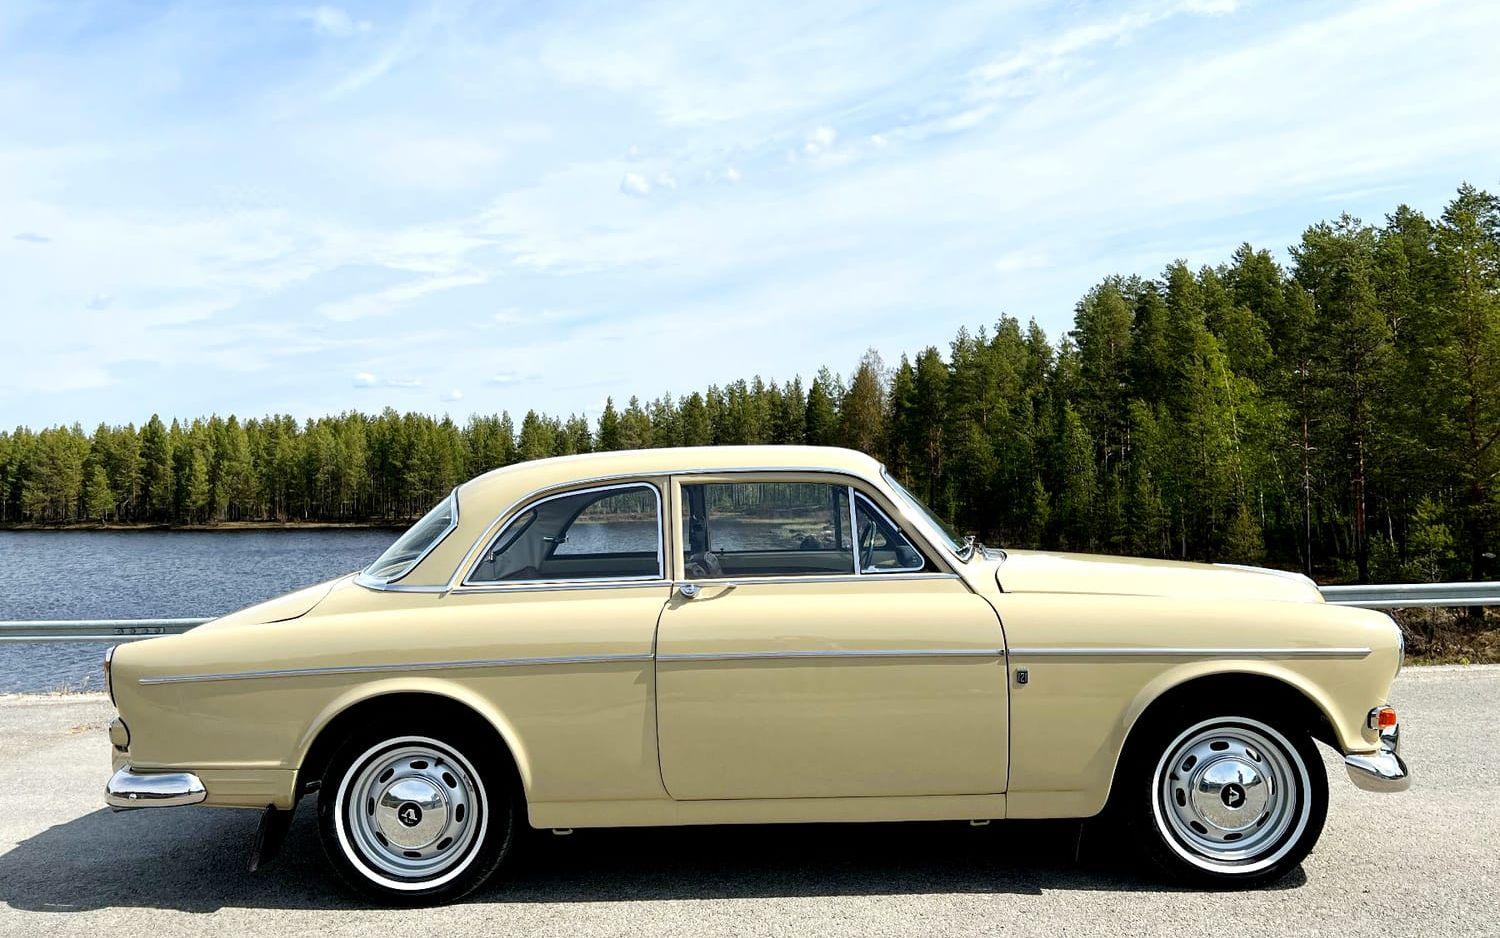 En gul Volvo Amazon 121 P130 B18 från 1965, såldes för 300 000 kronor på auktionen. Den har renoverats en hel del av sin ägare, bland annat har den lackerats om i originalkulören gyllengul, motorn och hastighetsmätaren har renoverats, och stolarna är omklädda. Efter renoveringen har den rullat 17 kilometer.